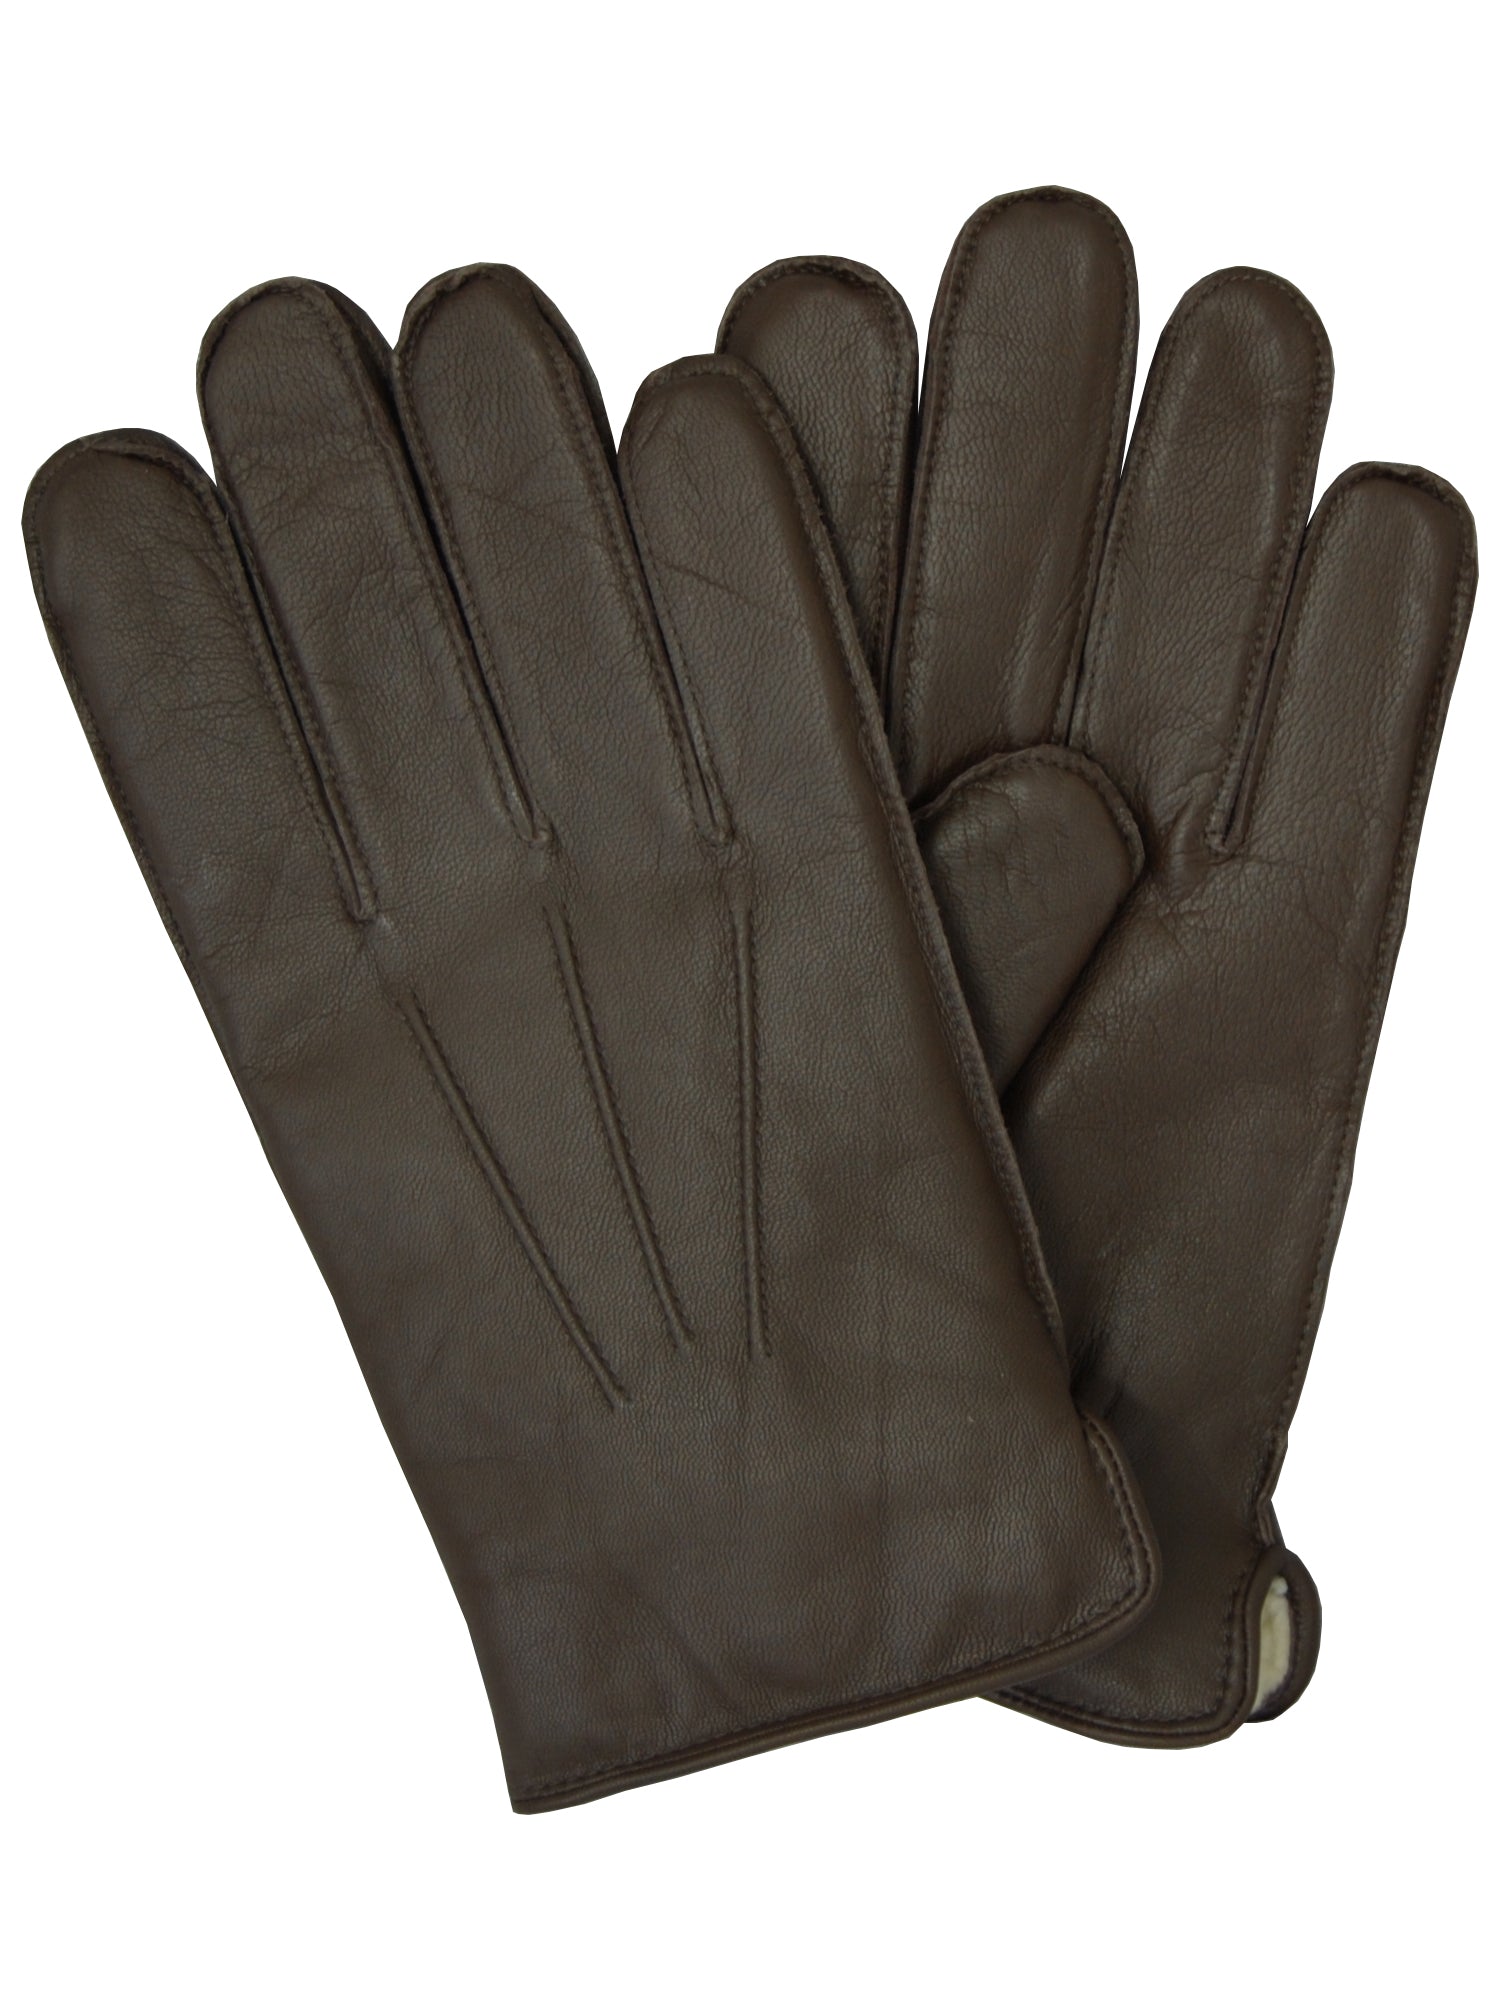 Lauer Men's Goatskin Leather Gloves in Brown - 1879-BRN